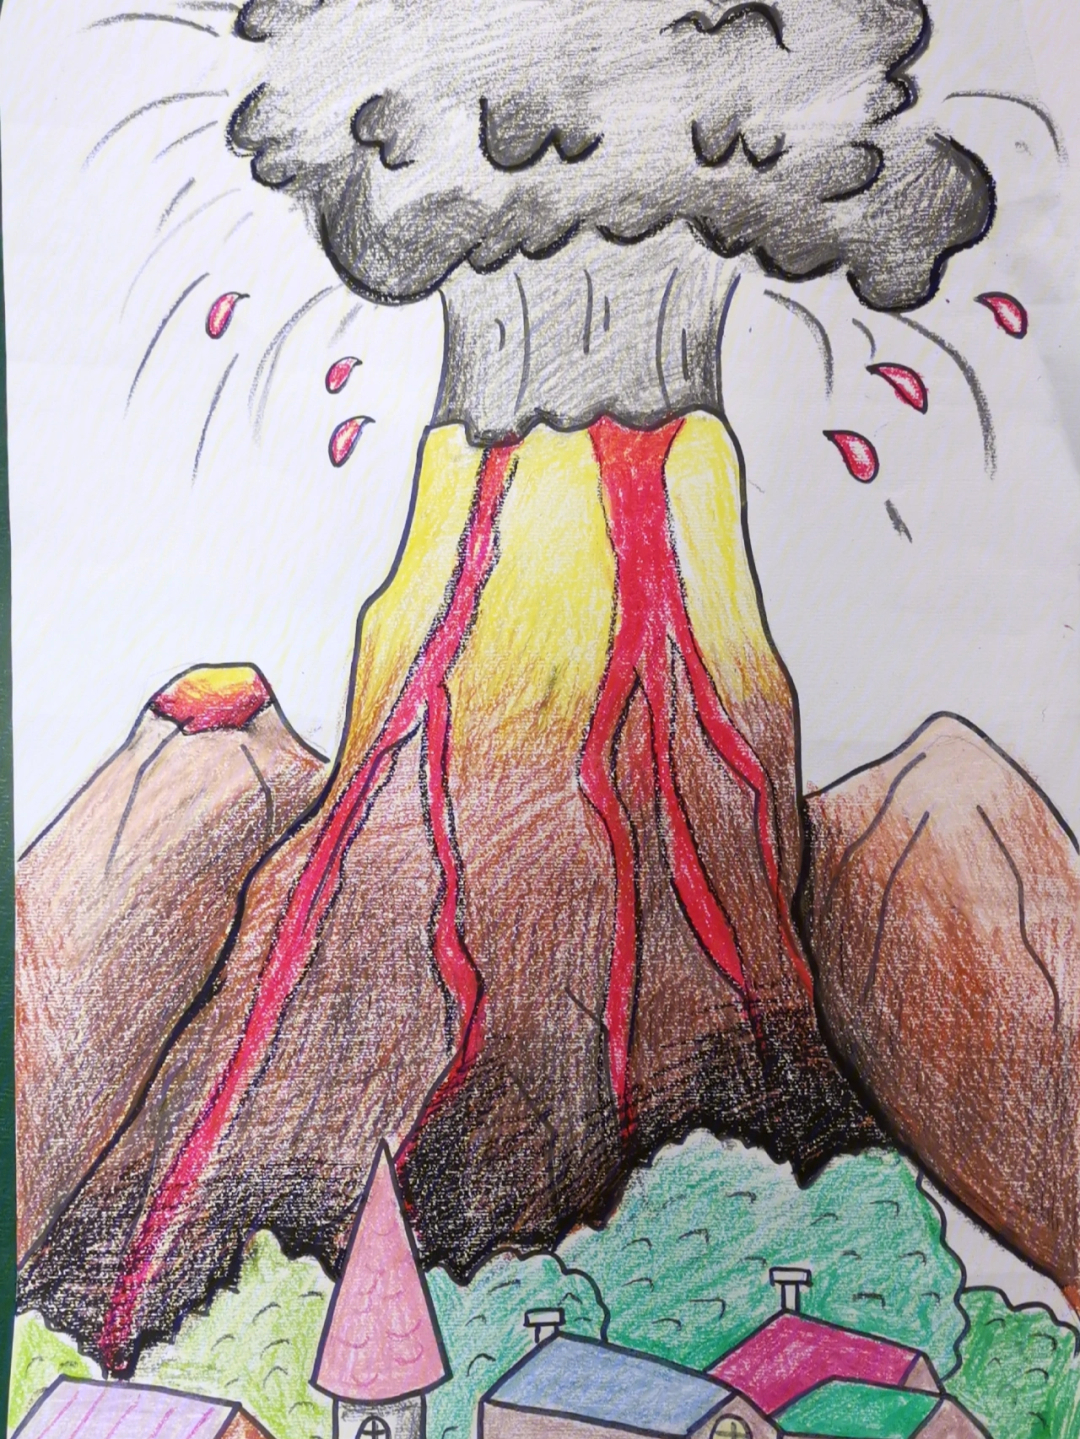 火山怎么画好看又简单图片